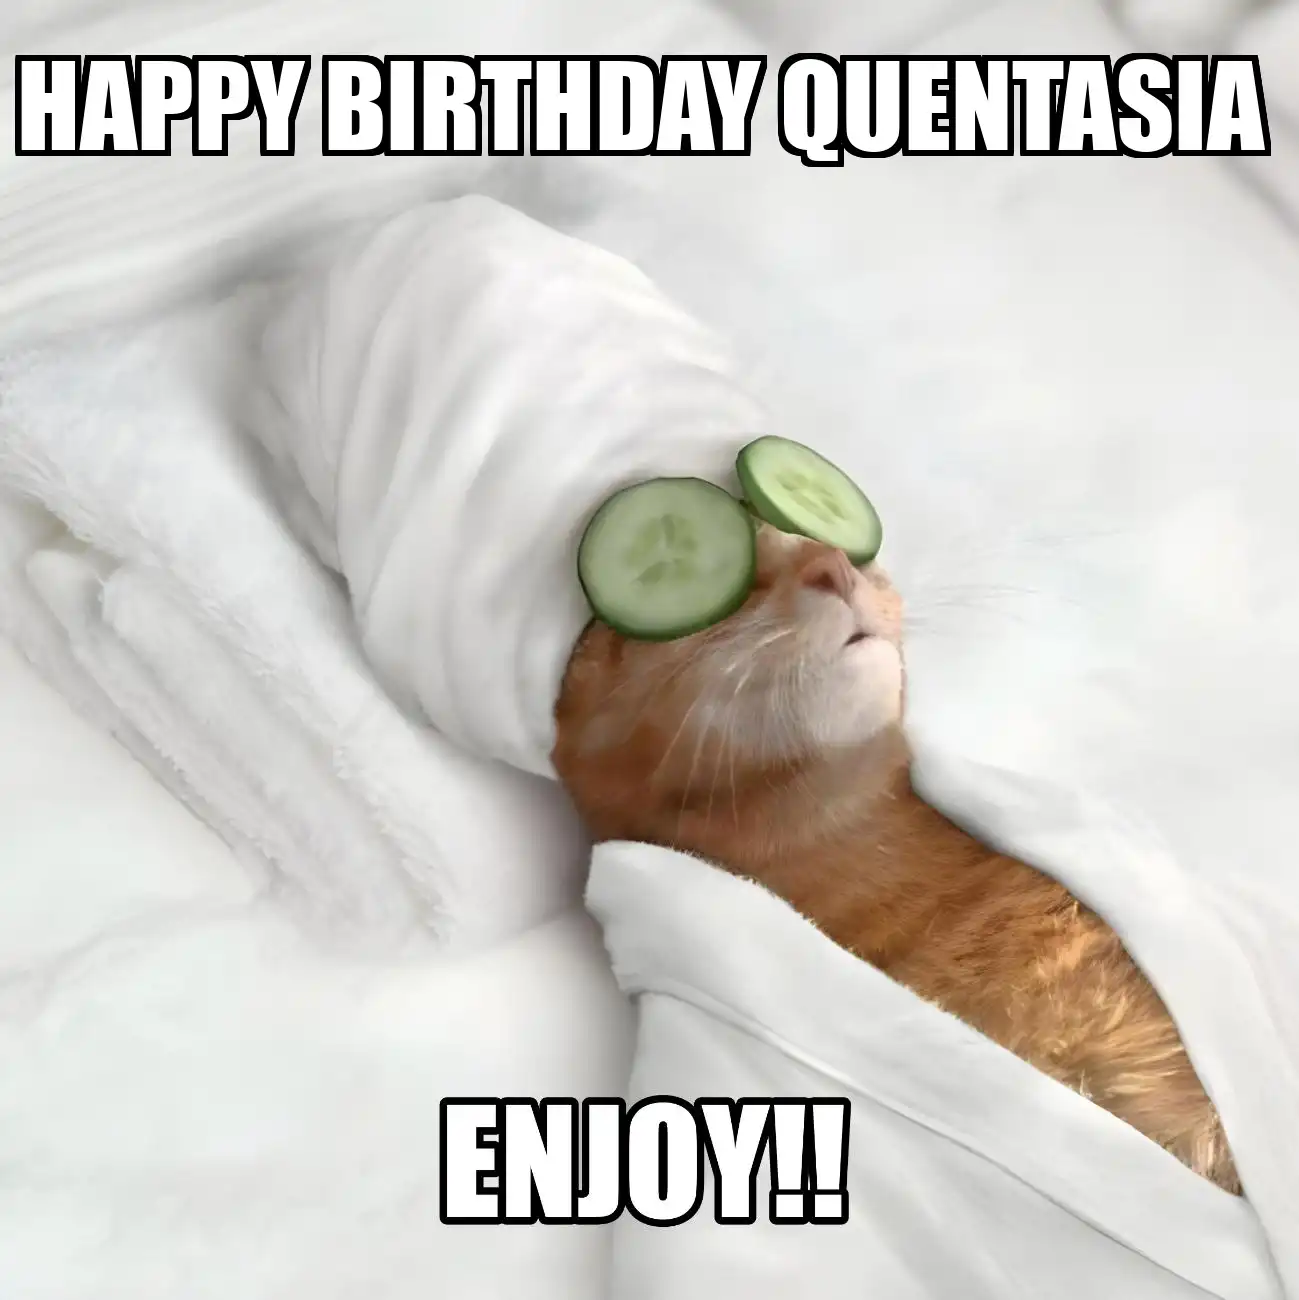 Happy Birthday Quentasia Enjoy Cat Meme